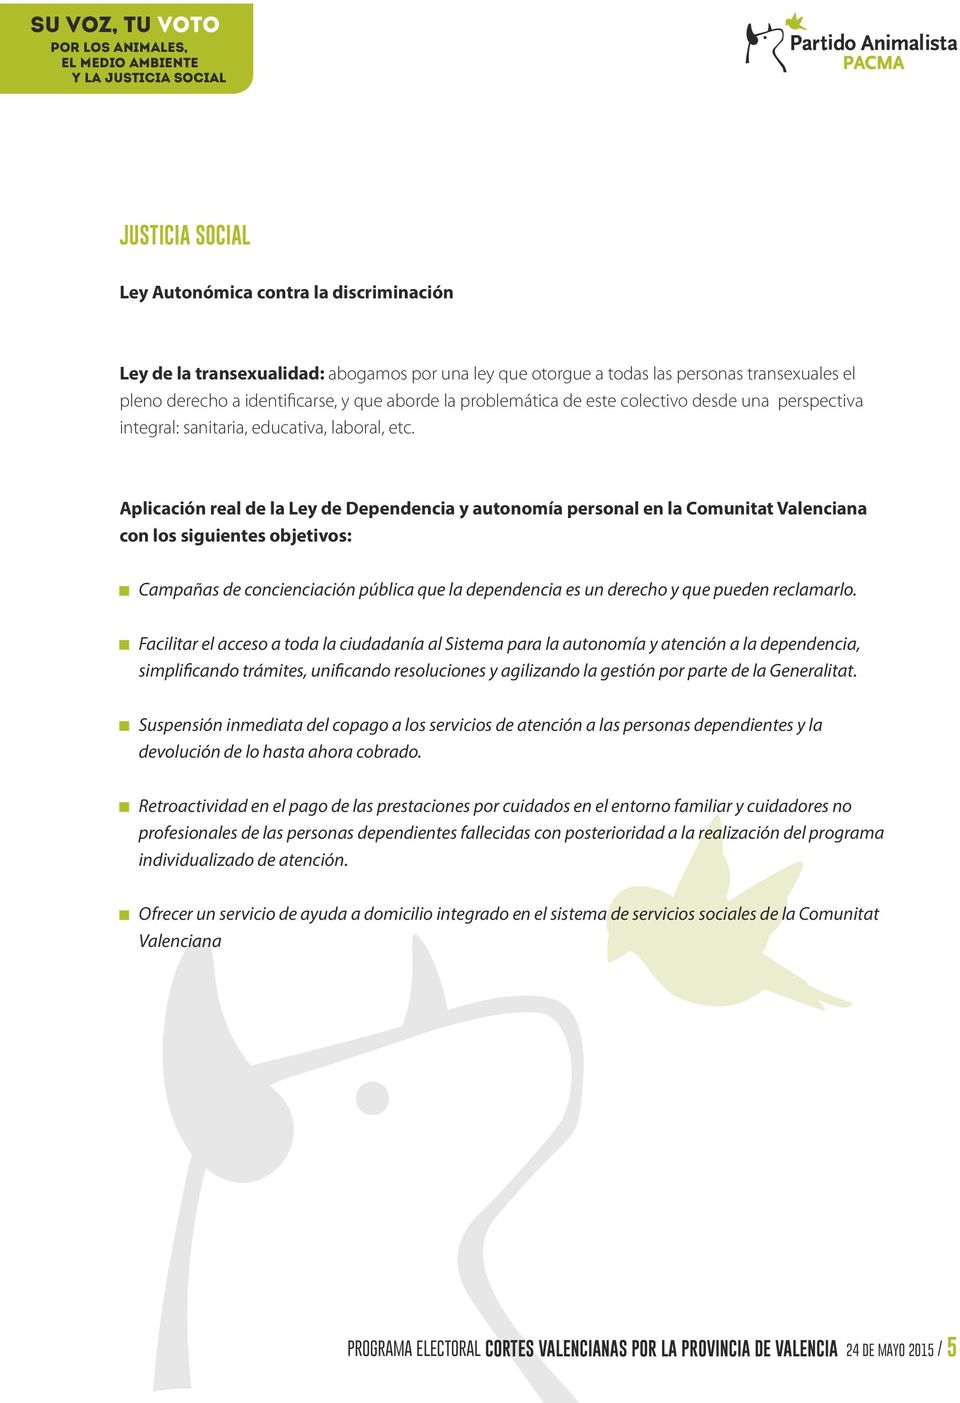 Aplicación real de la Ley de Dependencia y autonomía personal en la Comunitat Valenciana con los siguientes objetivos: Campañas de concienciación pública que la dependencia es un derecho y que pueden